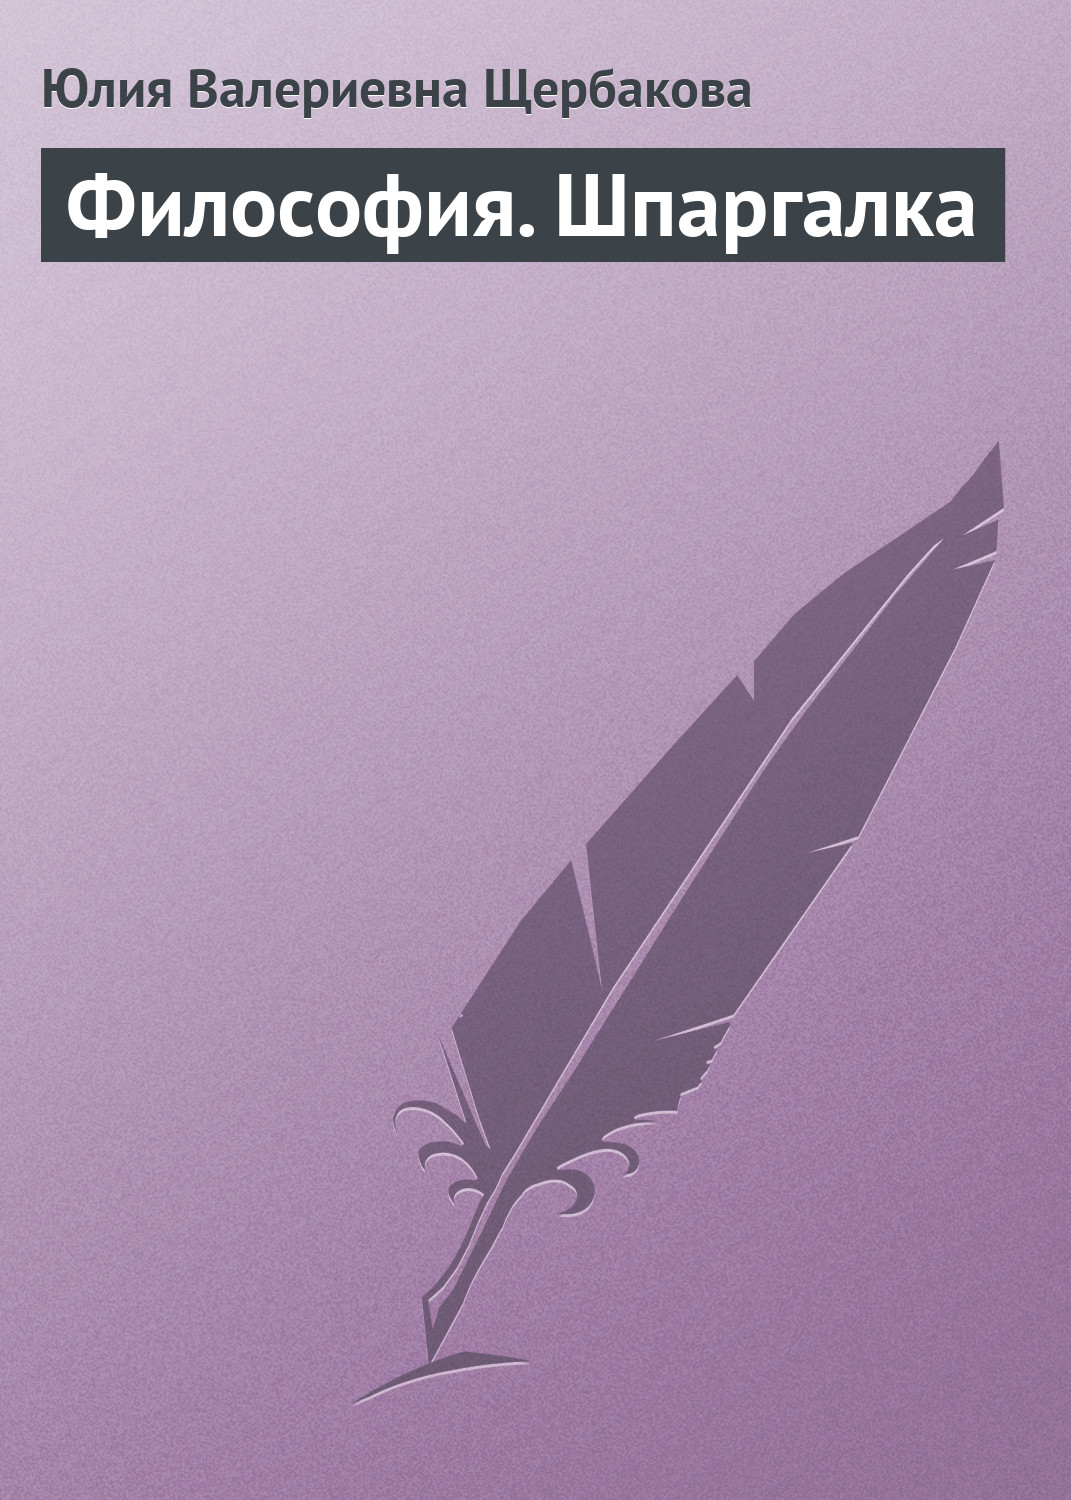 Книга Философия. Шпаргалка из серии , созданная Юлия Щербакова, может относится к жанру Философия. Стоимость книги Философия. Шпаргалка  с идентификатором 6181116 составляет 59.90 руб.